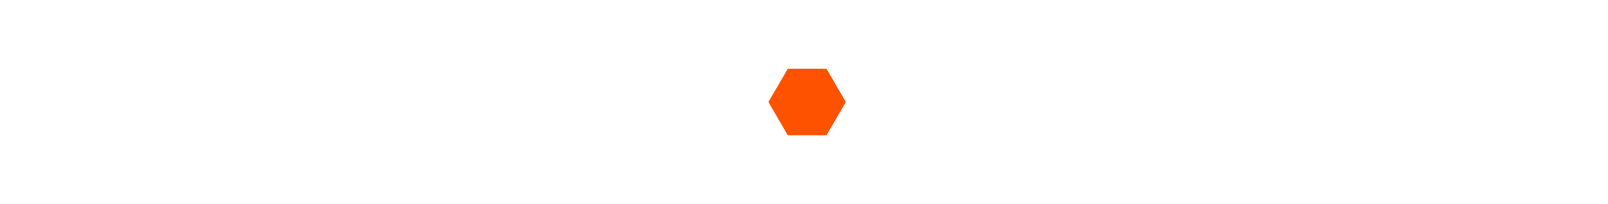 Procore Logo groß für dunkle Hintergründe (transparentes PNG)